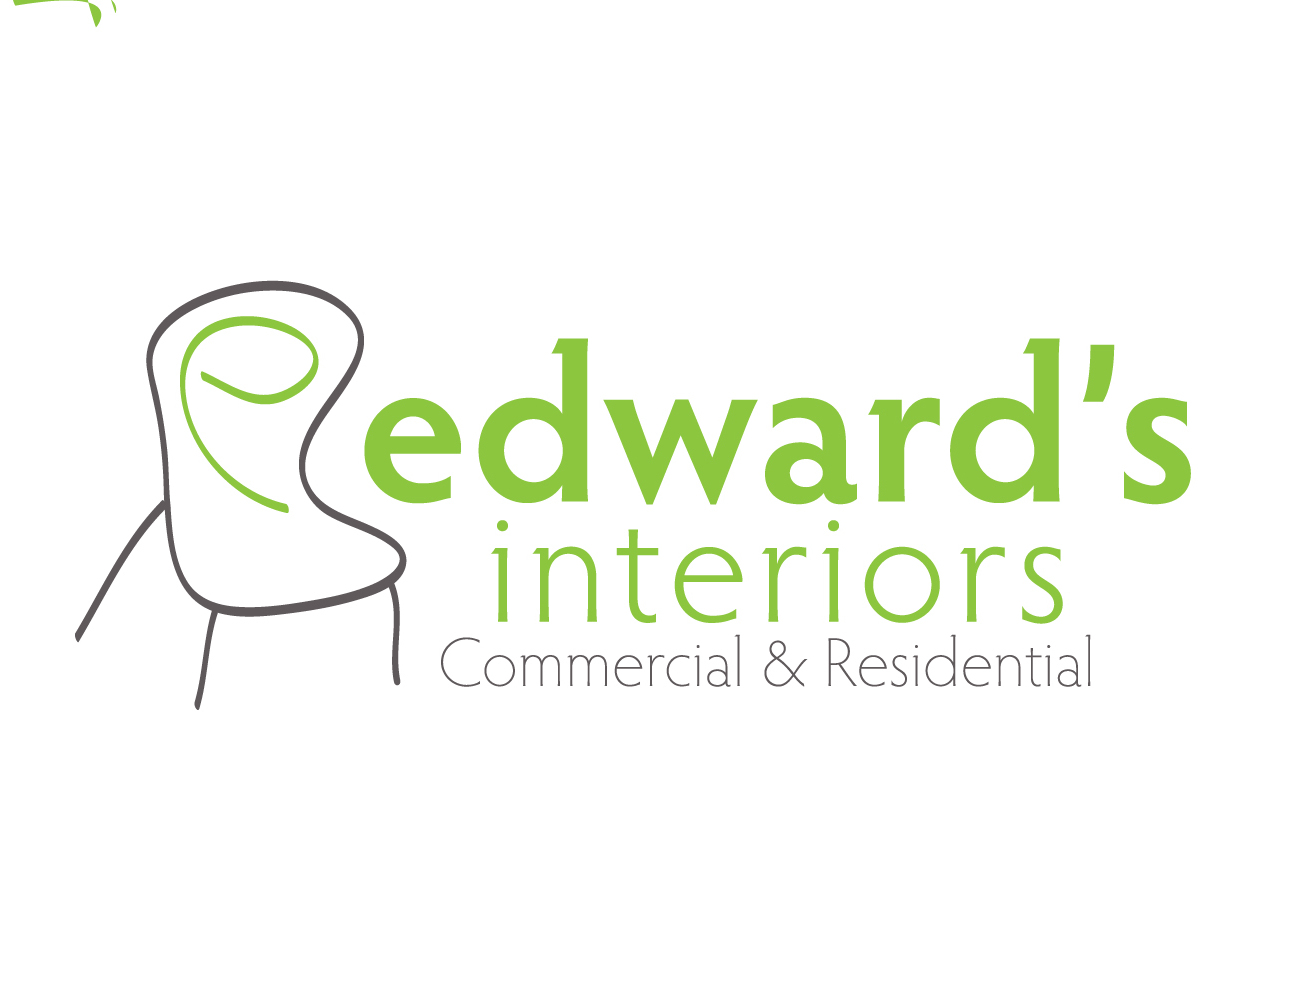 Edward's-Logo.jpg